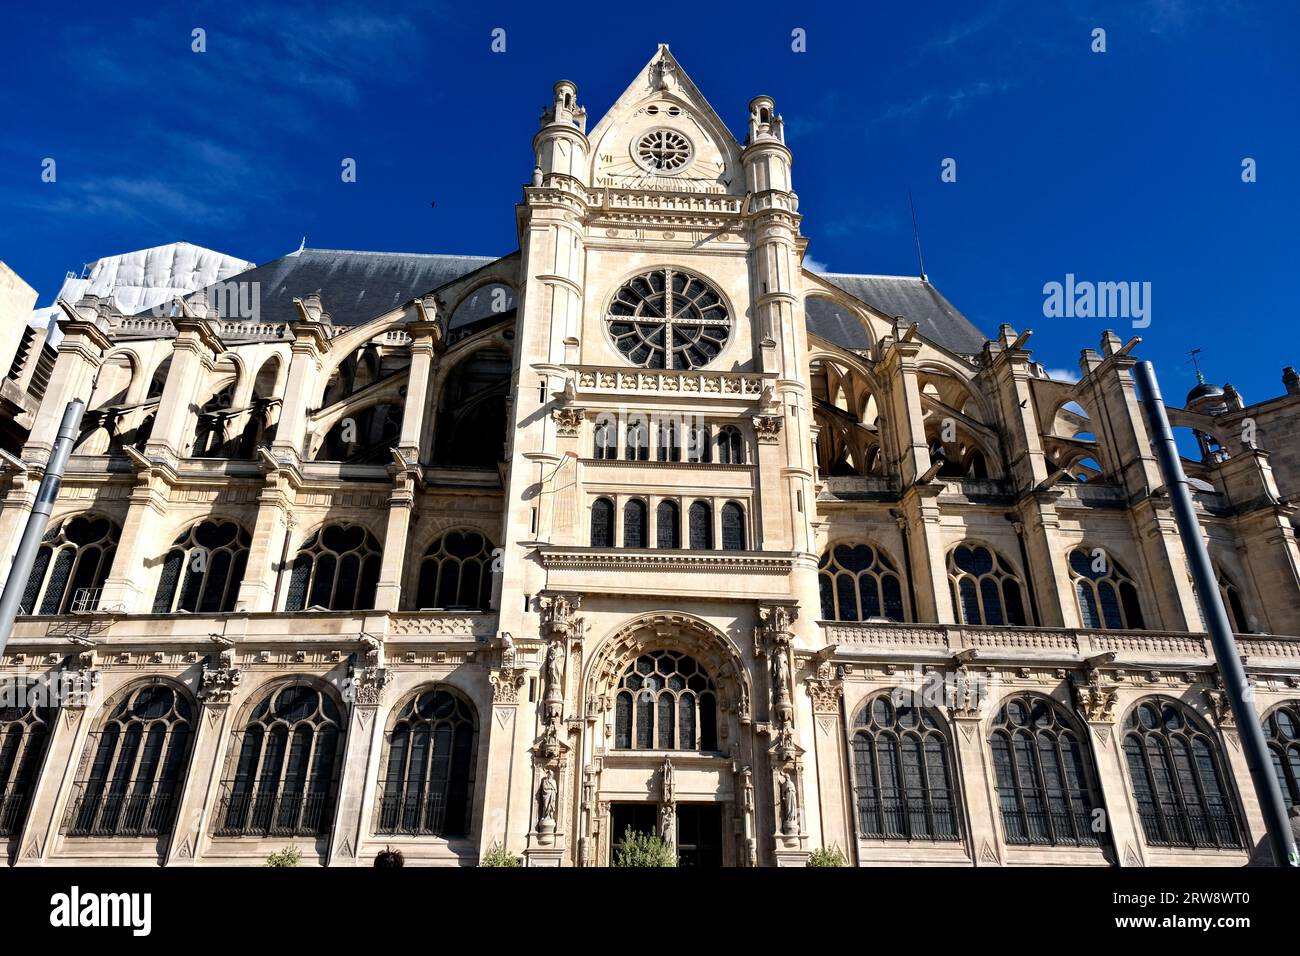 Facade of Eglise Saint Eustache in Paris France Stock Photo